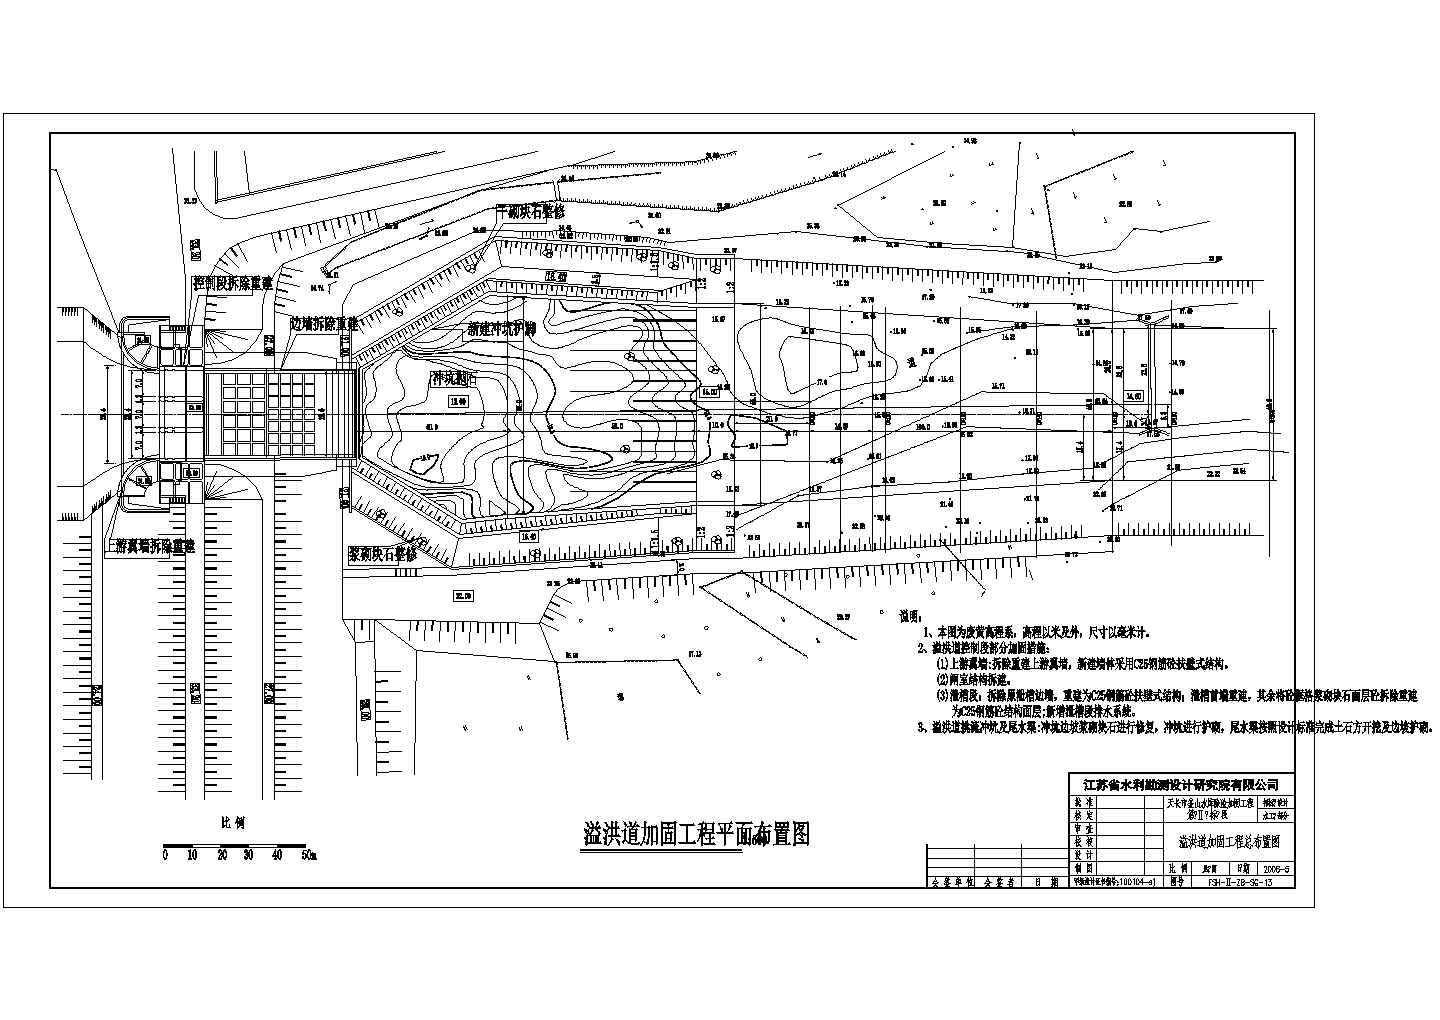 【天长】釜山水库除险加固工程溢洪道招标设计图